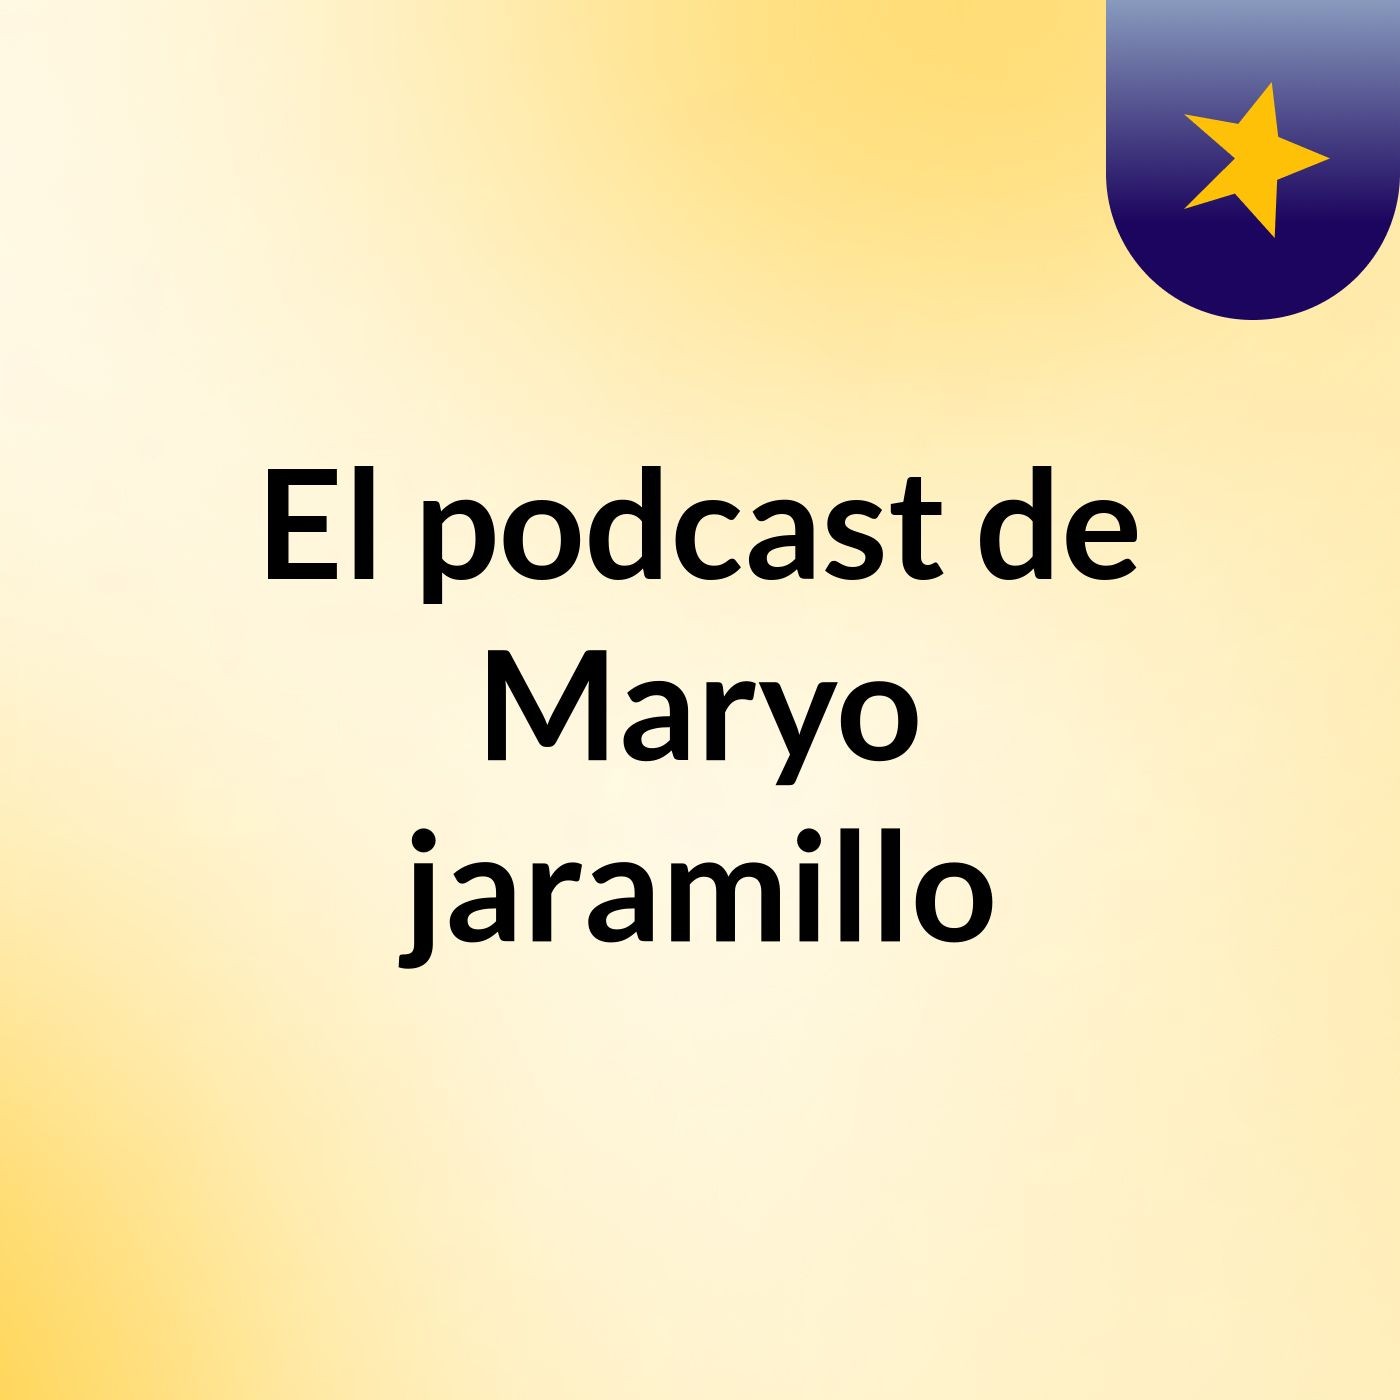 El podcast de Maryo jaramillo